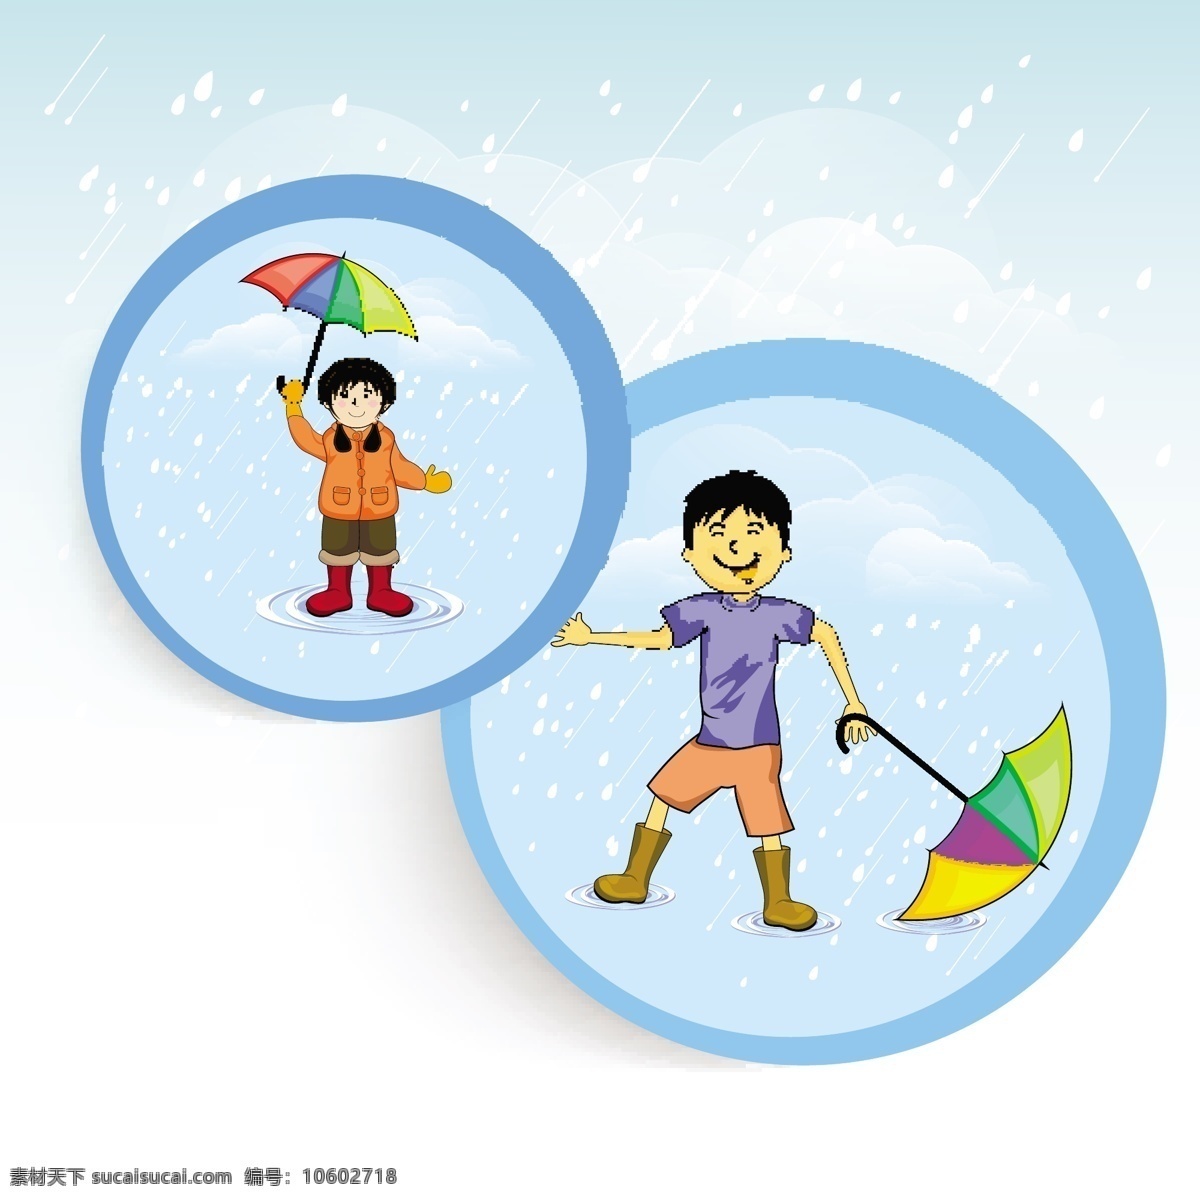 打着 伞 女孩 男孩 模板下载 坏天气 雨伞 雨鞋 雨滴 彩虹伞 儿童幼儿 矢量人物 矢量素材 白色